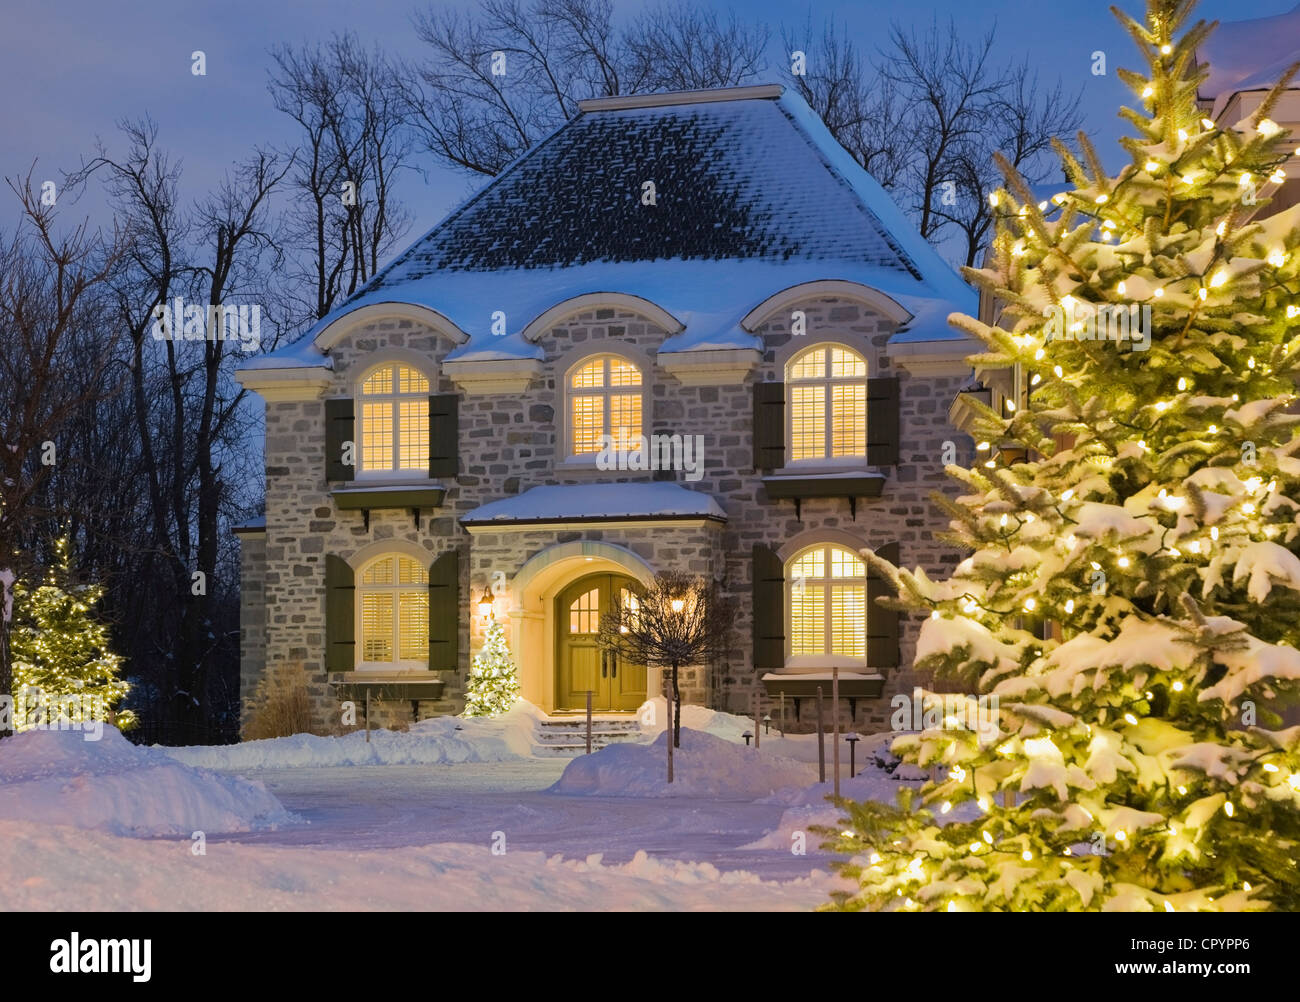 Chalet luxueux de style résidentiel maison avec les arbres à feuilles persistantes illuminée au crépuscule en hiver, Québec, Canada Banque D'Images